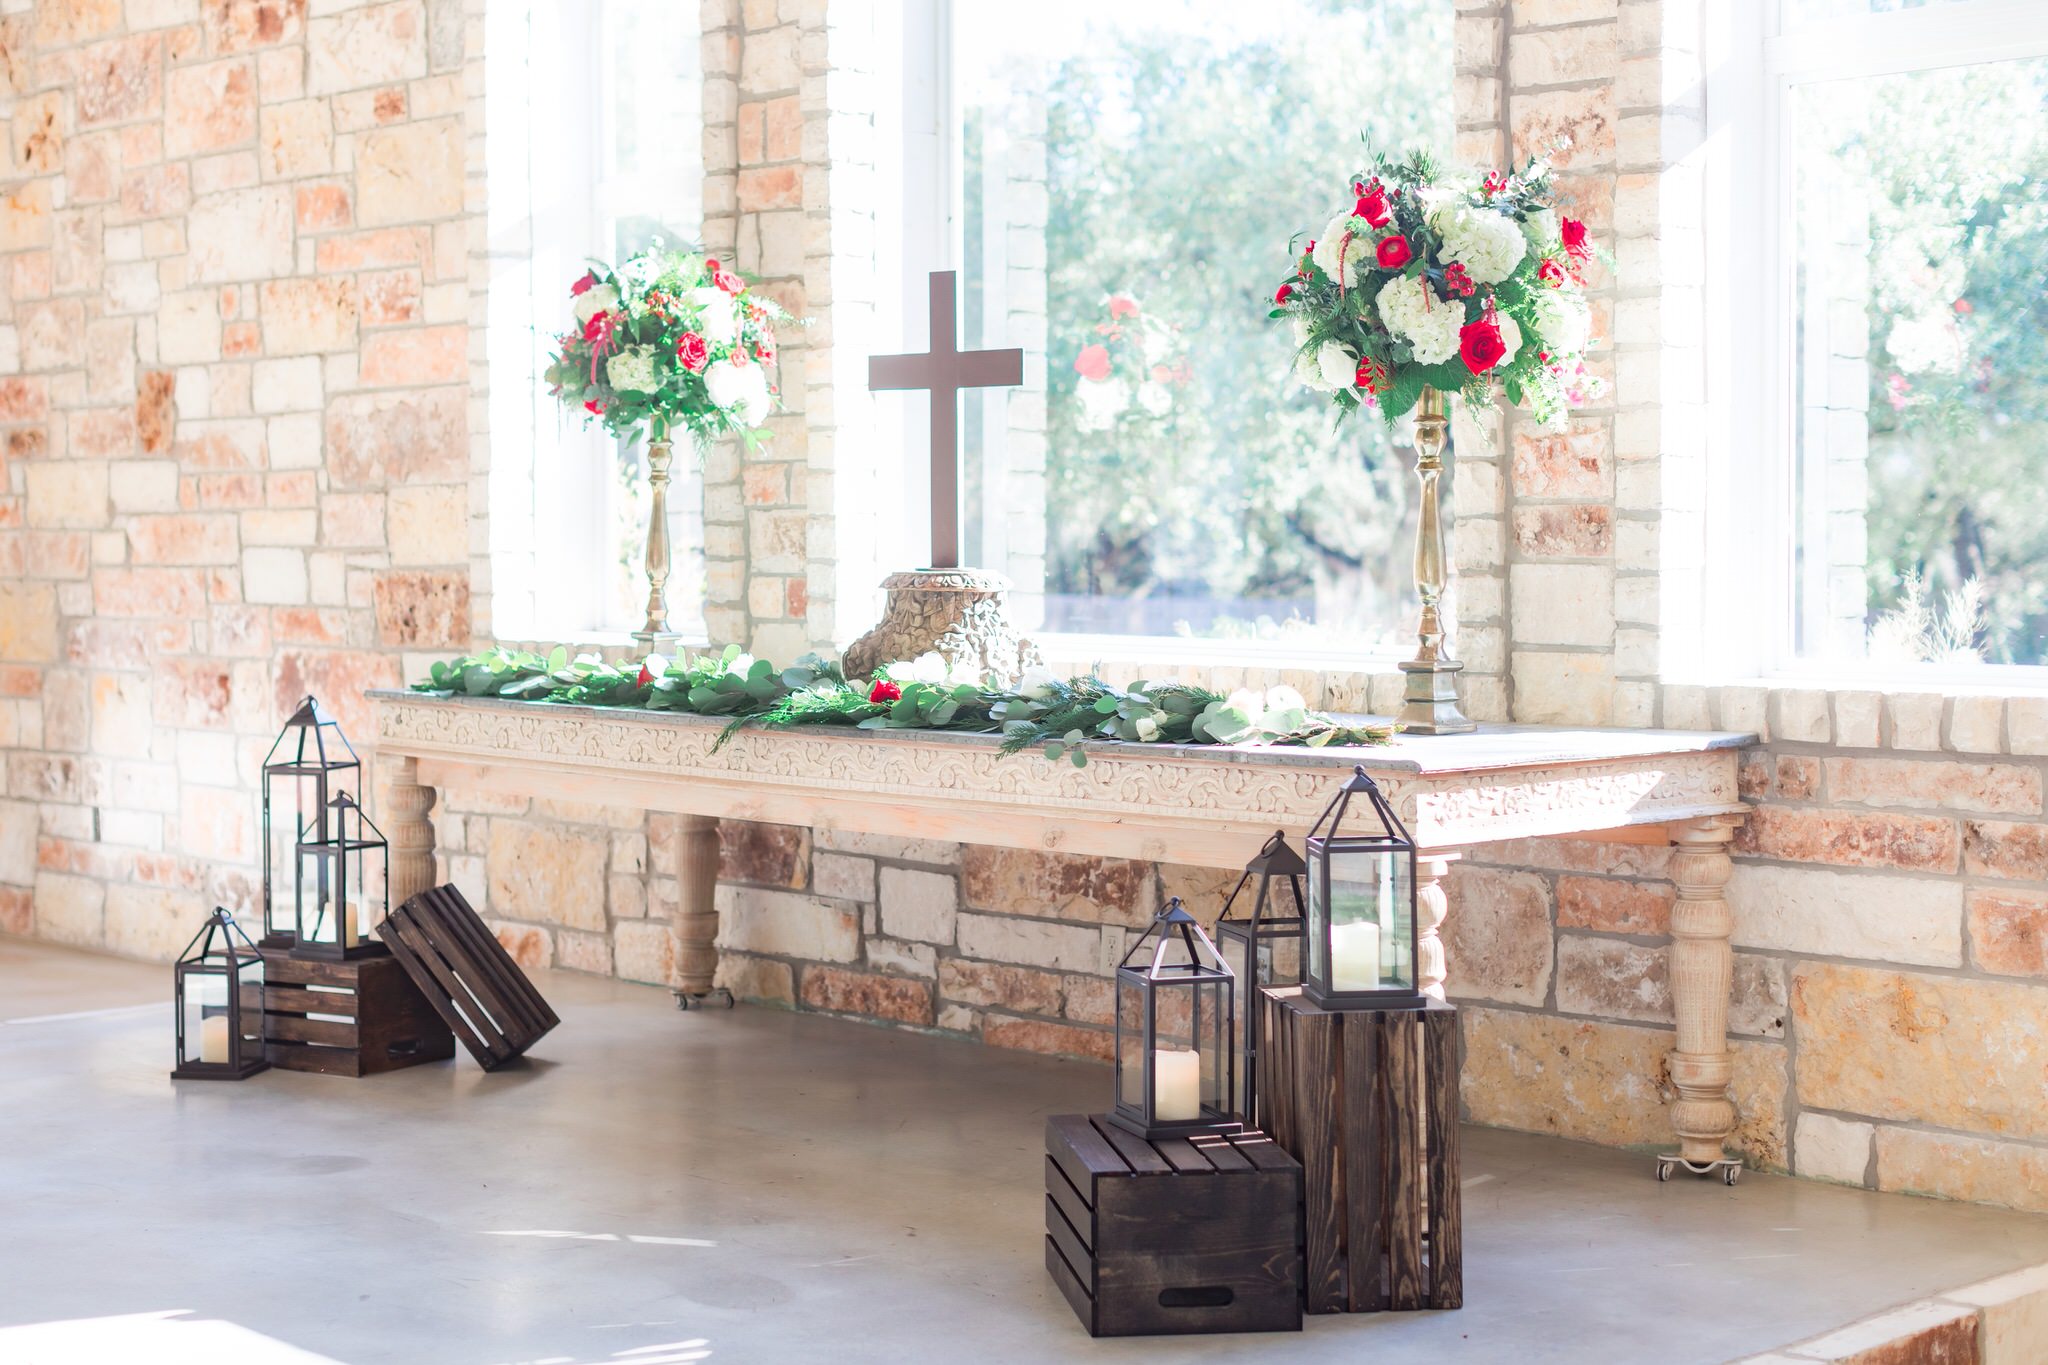 A Christmas Themed Wedding at the Chandelier of Gruene in New Braunfels, TX by Dawn Elizabeth Studios, San Antonio Wedding Photographer